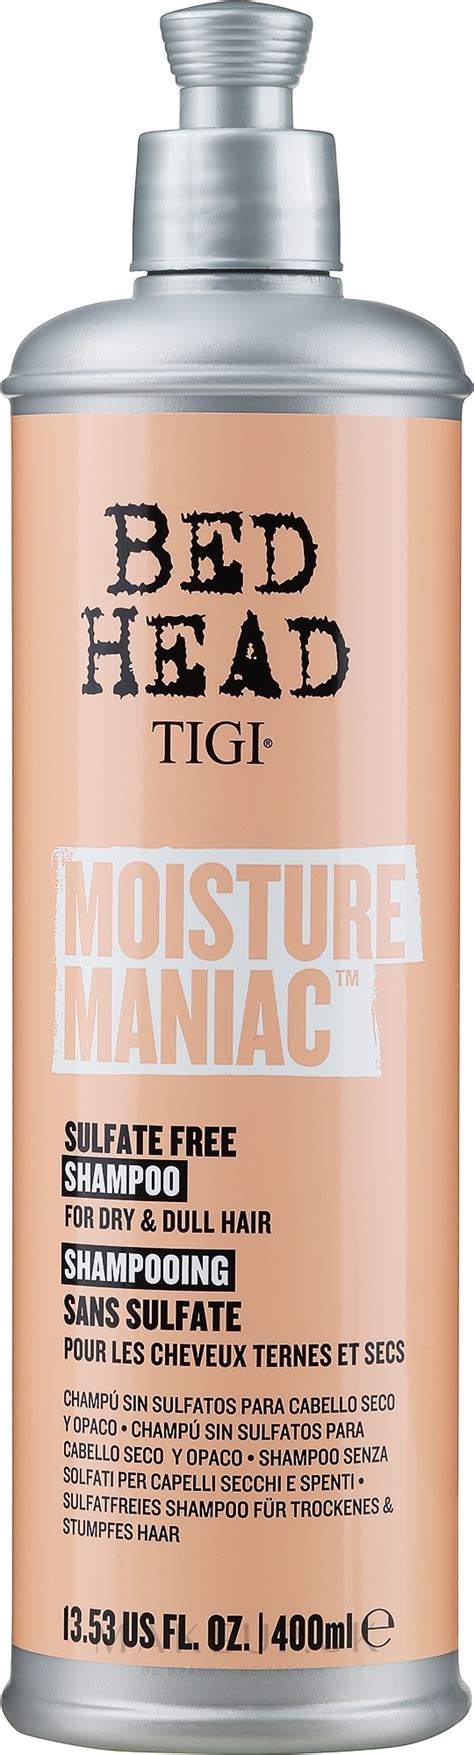 Tigi Bed Head Moisture Maniac Shampoo Moisturizing Shampoo Makeup Uk